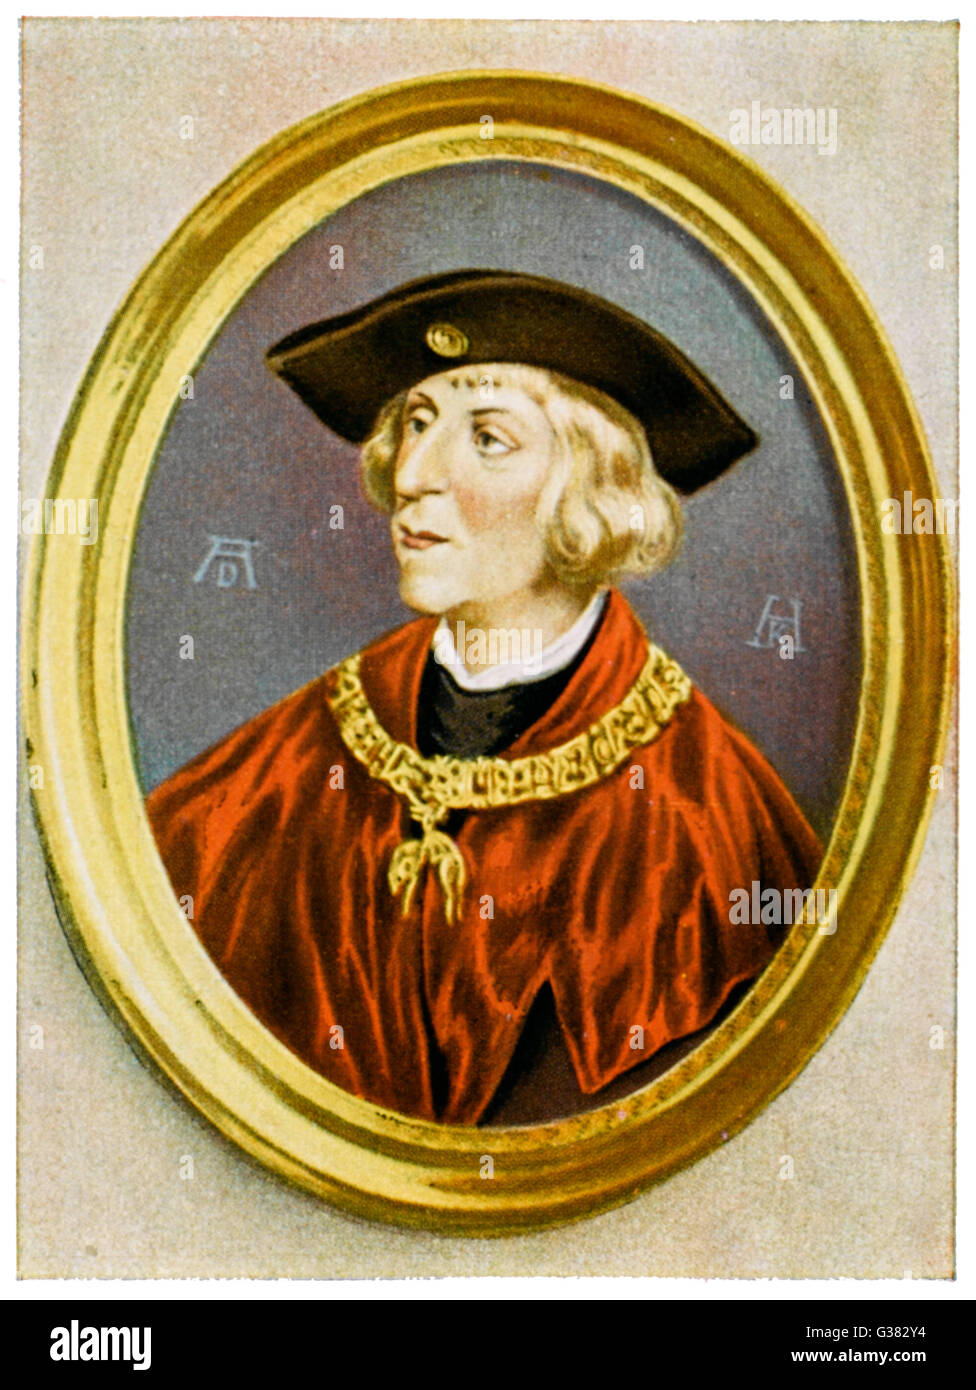 Maximiliano I Fecha: 1459 - 1519 Foto de stock